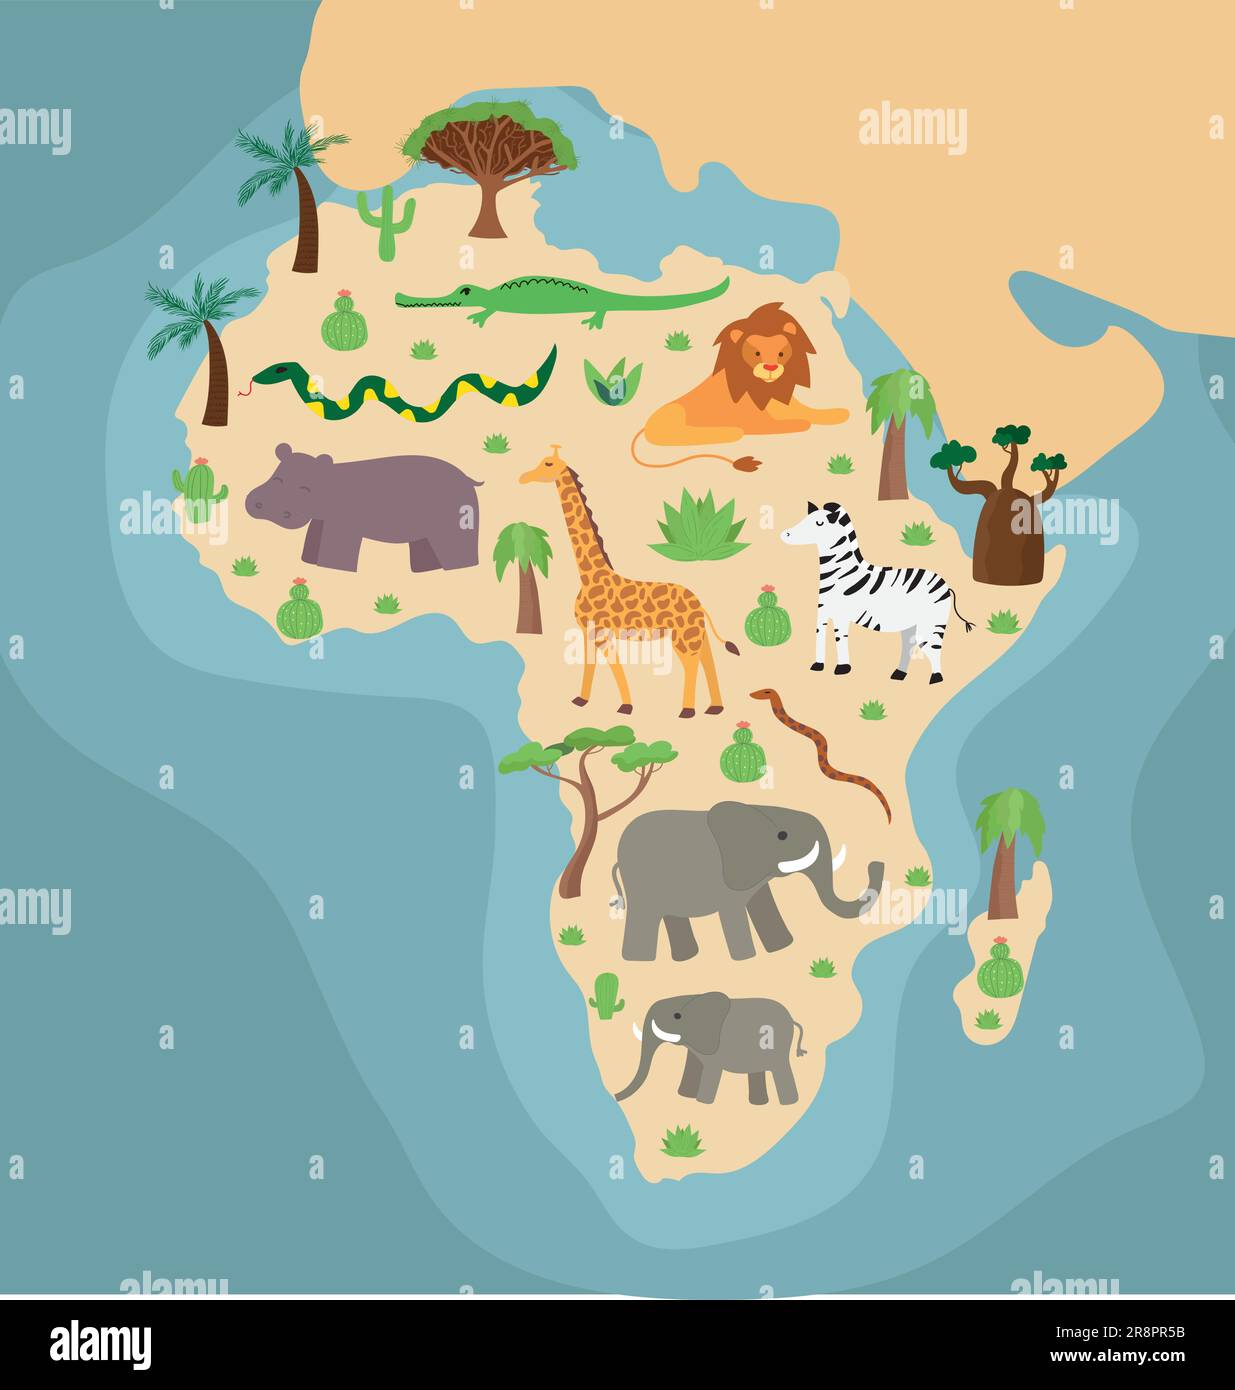 Dessin animé carte illustrée à la main de l'Afrique avec arbres d'endéma, plantes et île de Madagascar. dragon tree, palmier, cactus sur fond coloré. Illustration de Vecteur